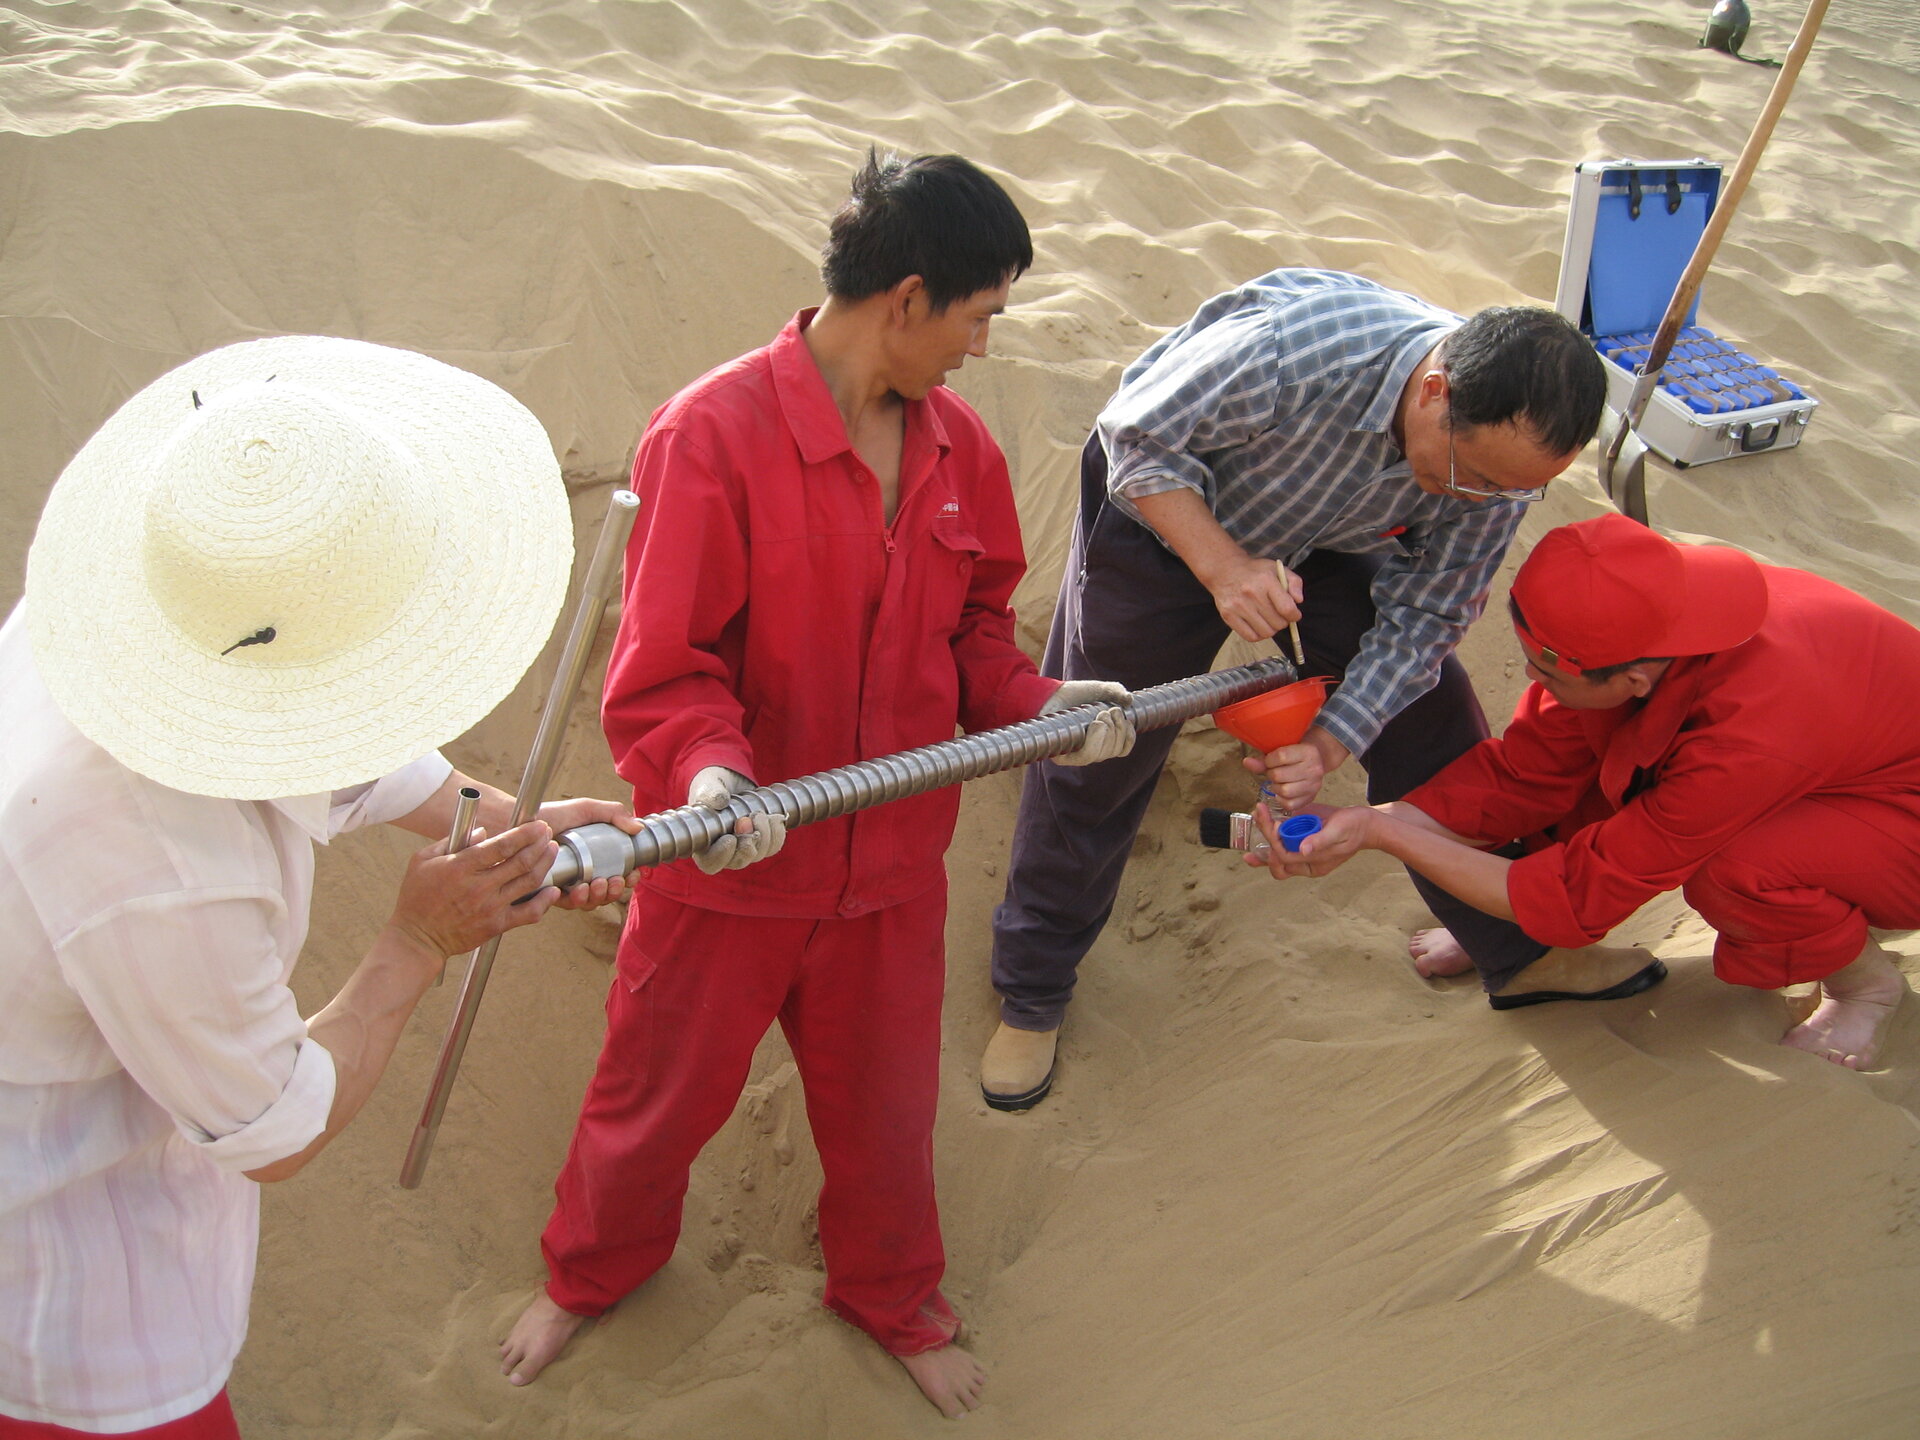 Taking soil samples in the Takla Makan desert